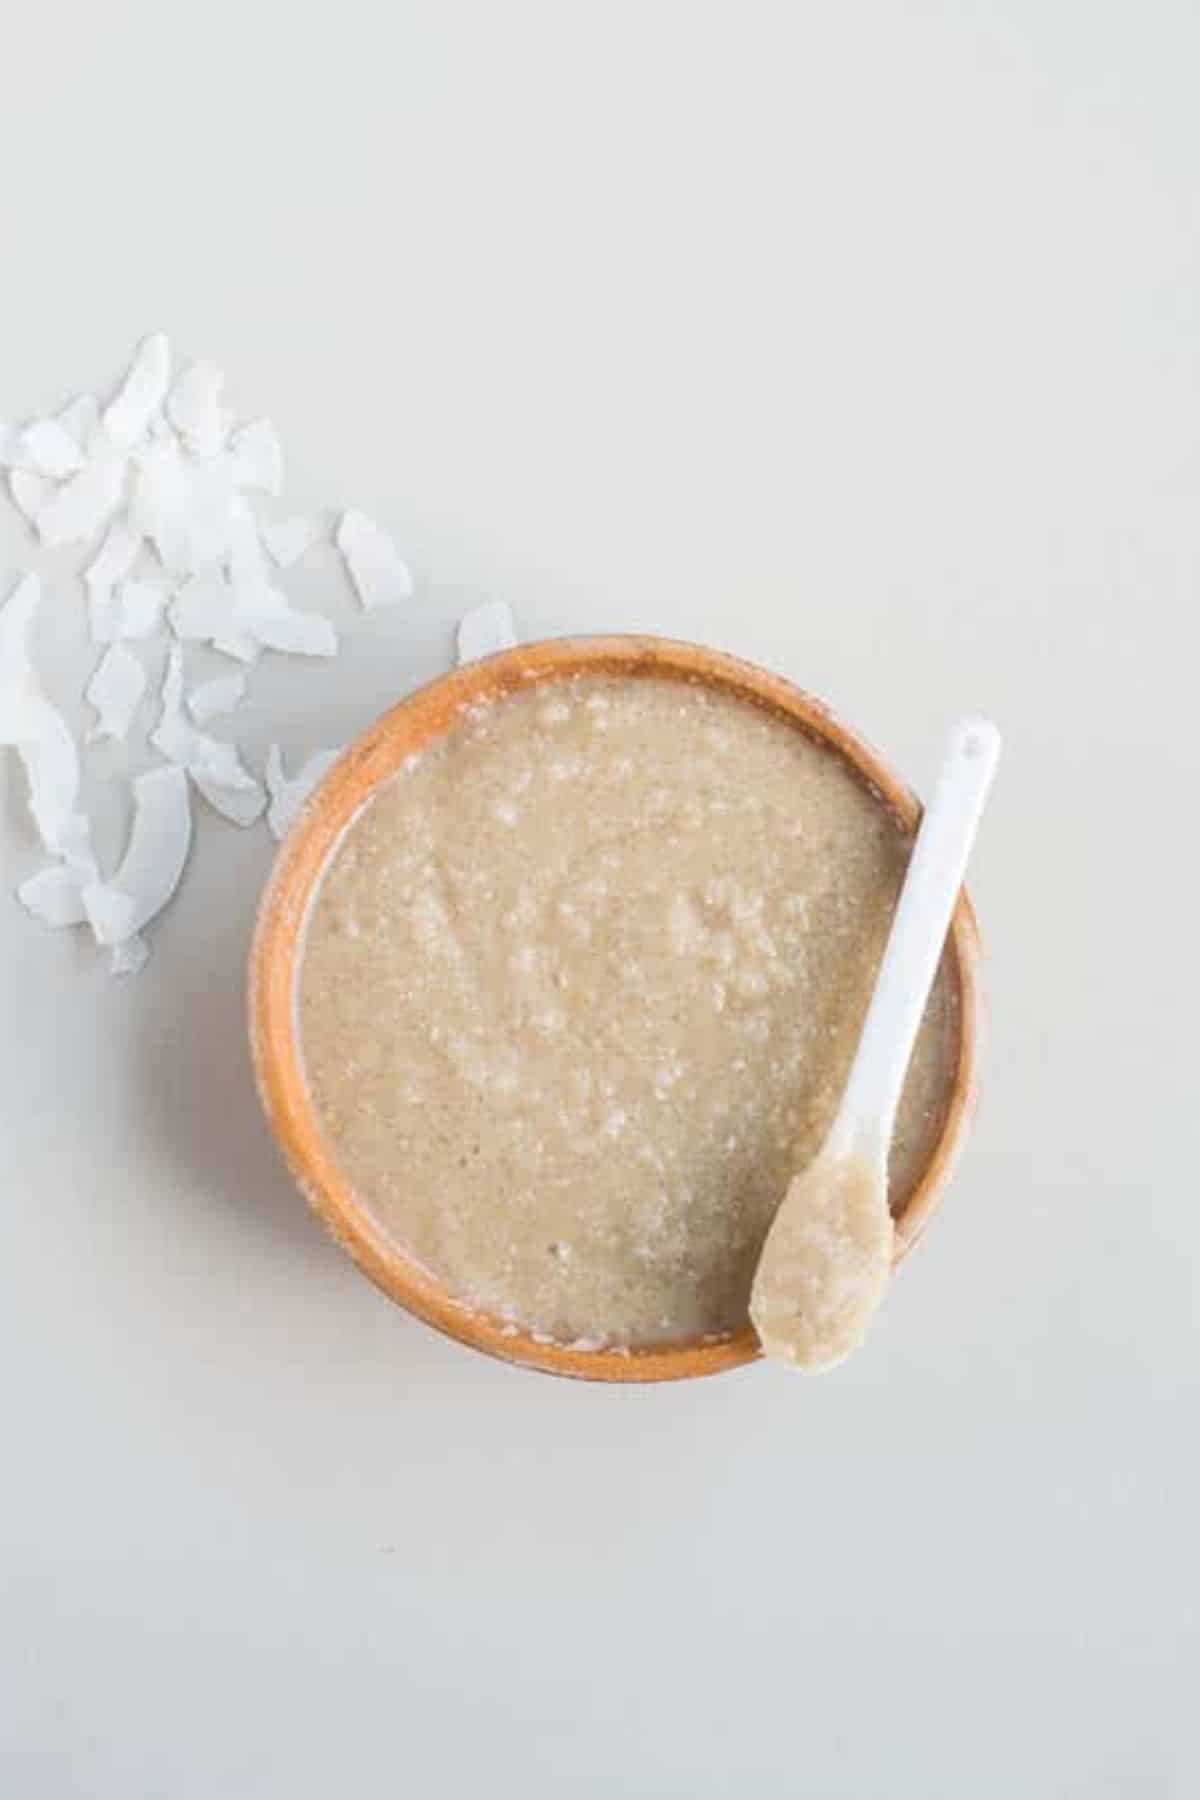 Coconut milk scrub recipe - pre tan scrub